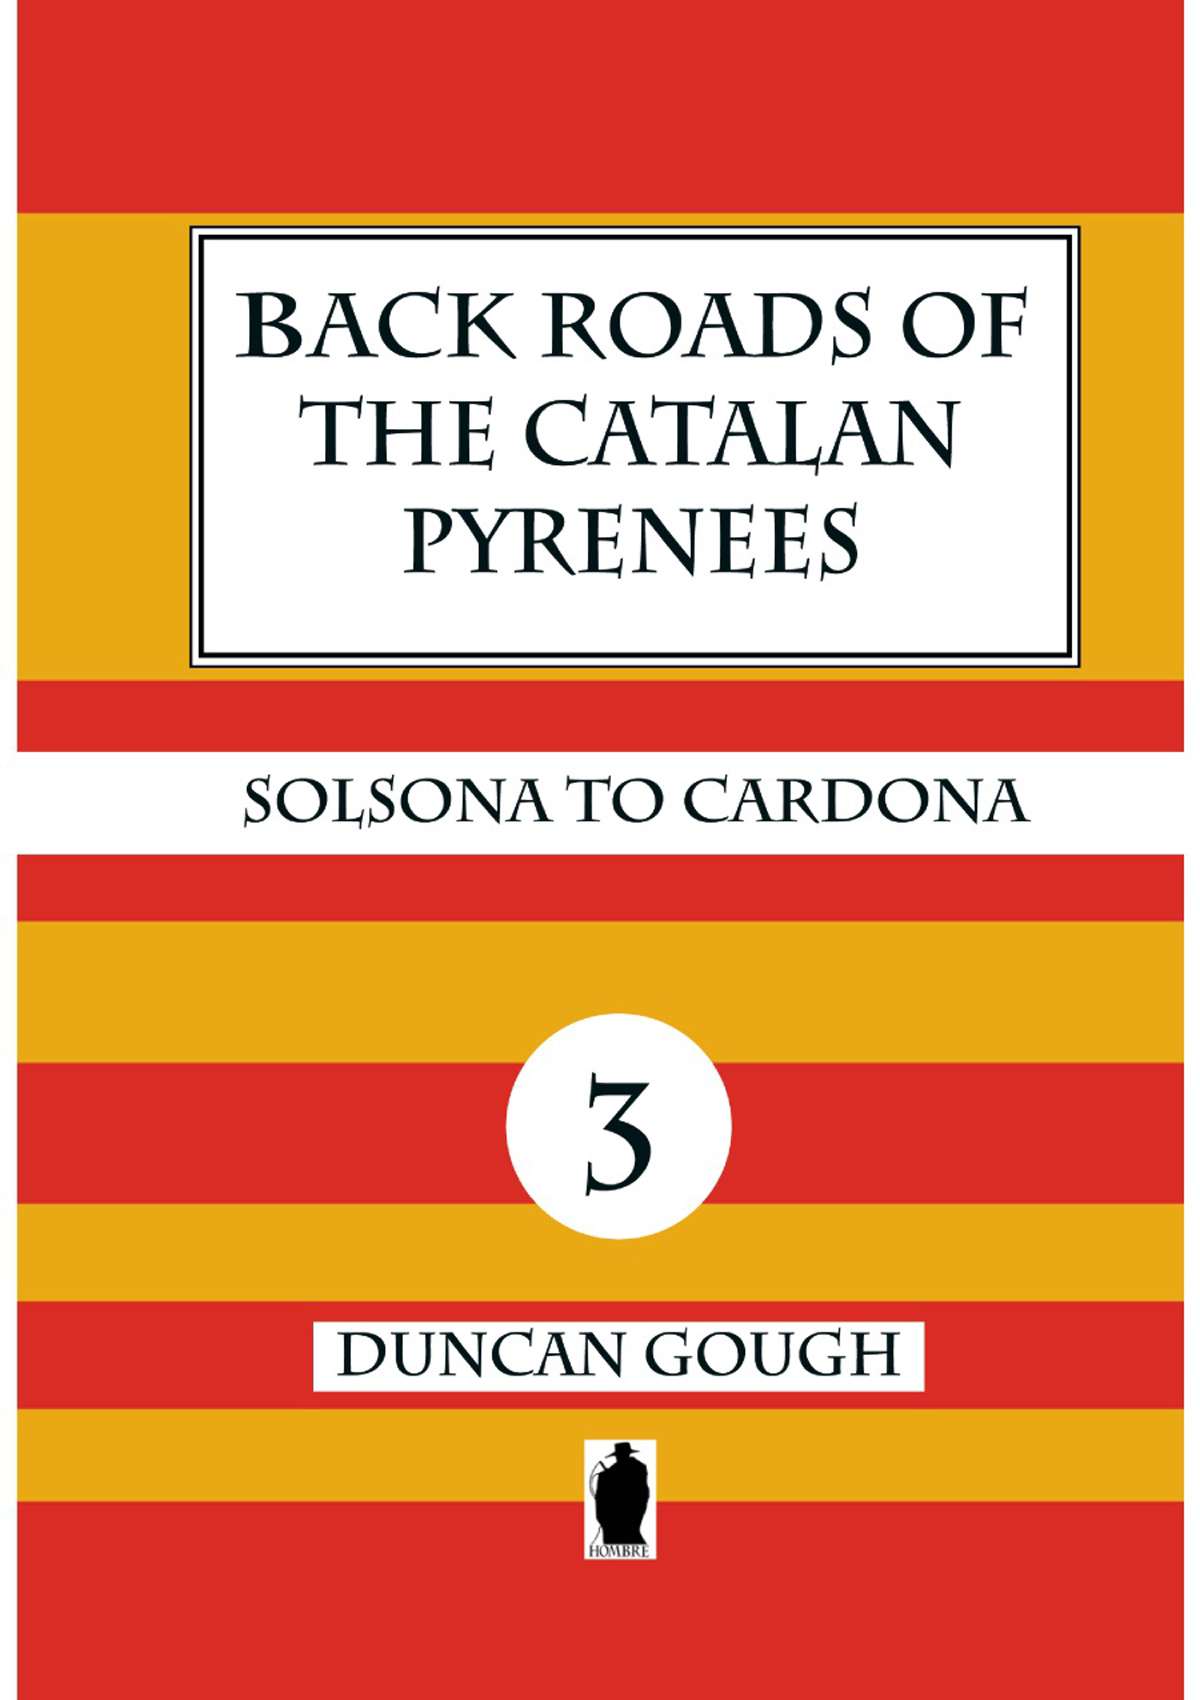 Back Roads of the Catalan Pyrenees - 3 - Solsona to Cardona